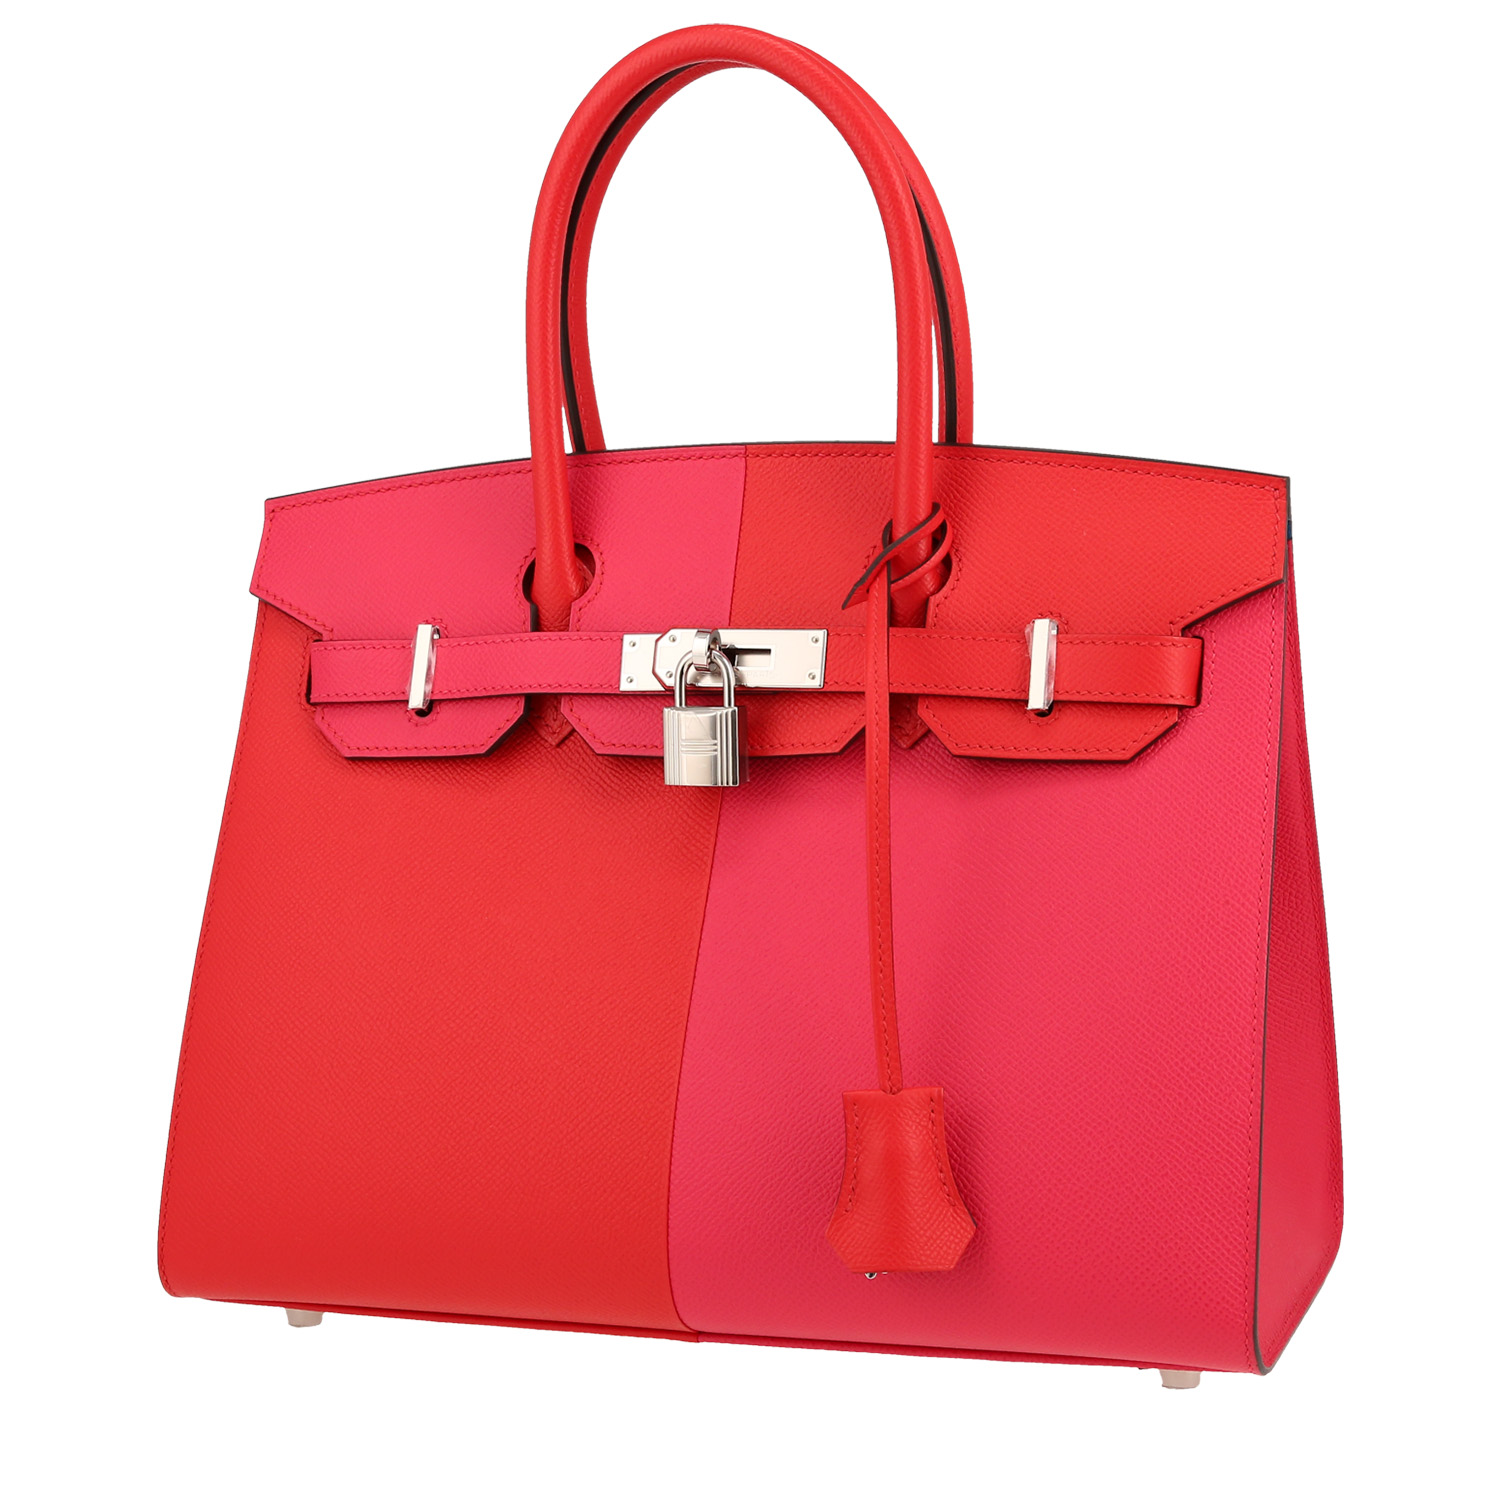 Hermès Birkin Casaque 30 cm handbag in rouge de coeur and rose Extreme epsom leather - 00pp